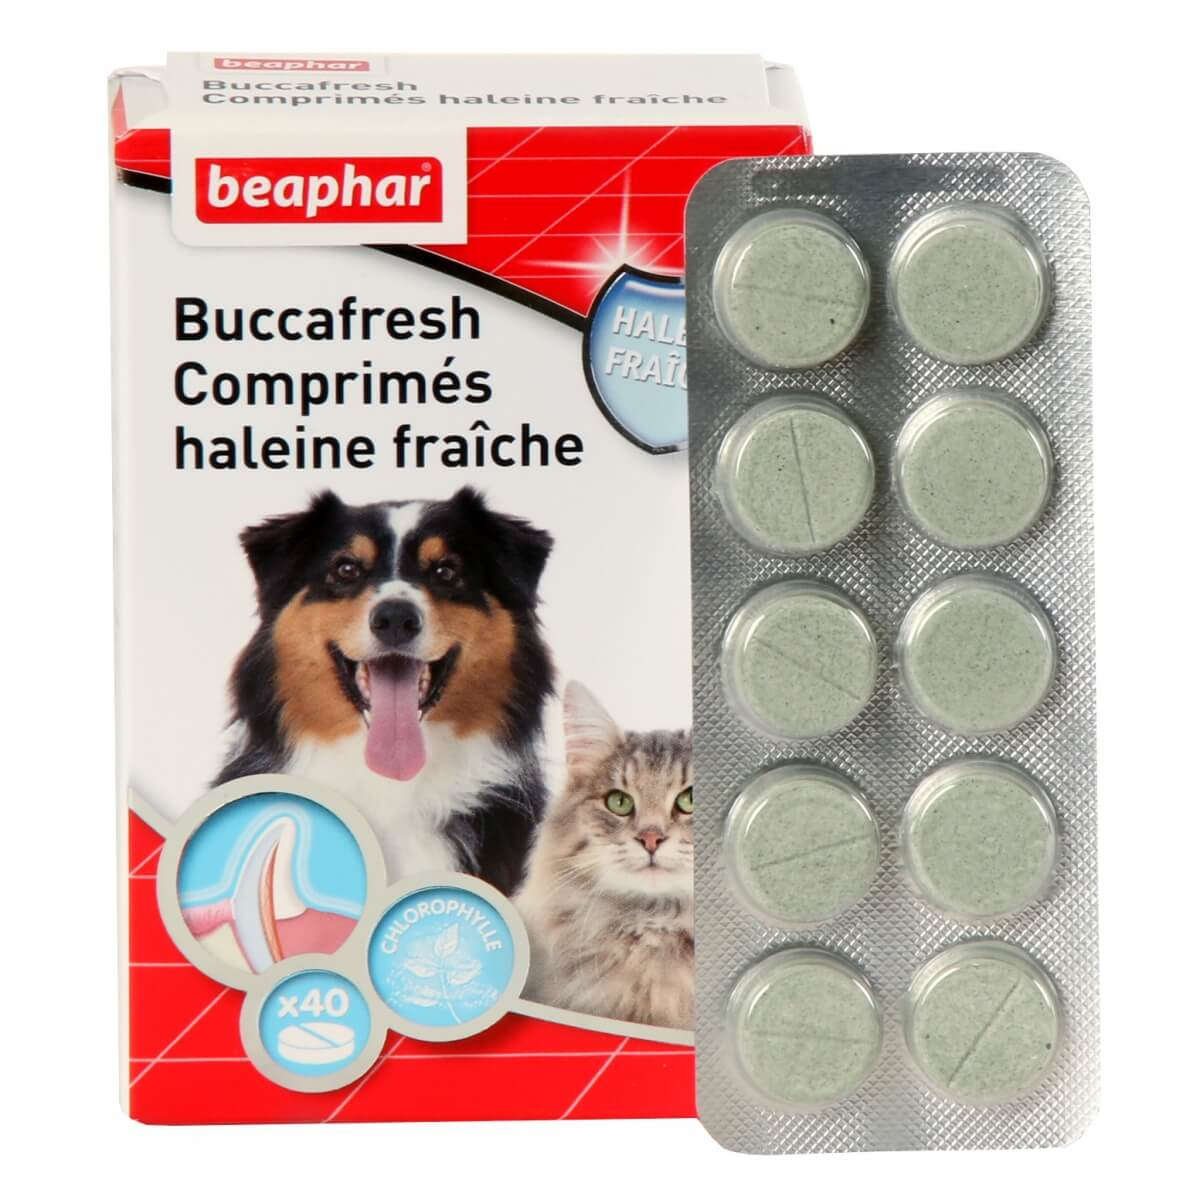 Buccafresh, tabletten voor een frisse adem